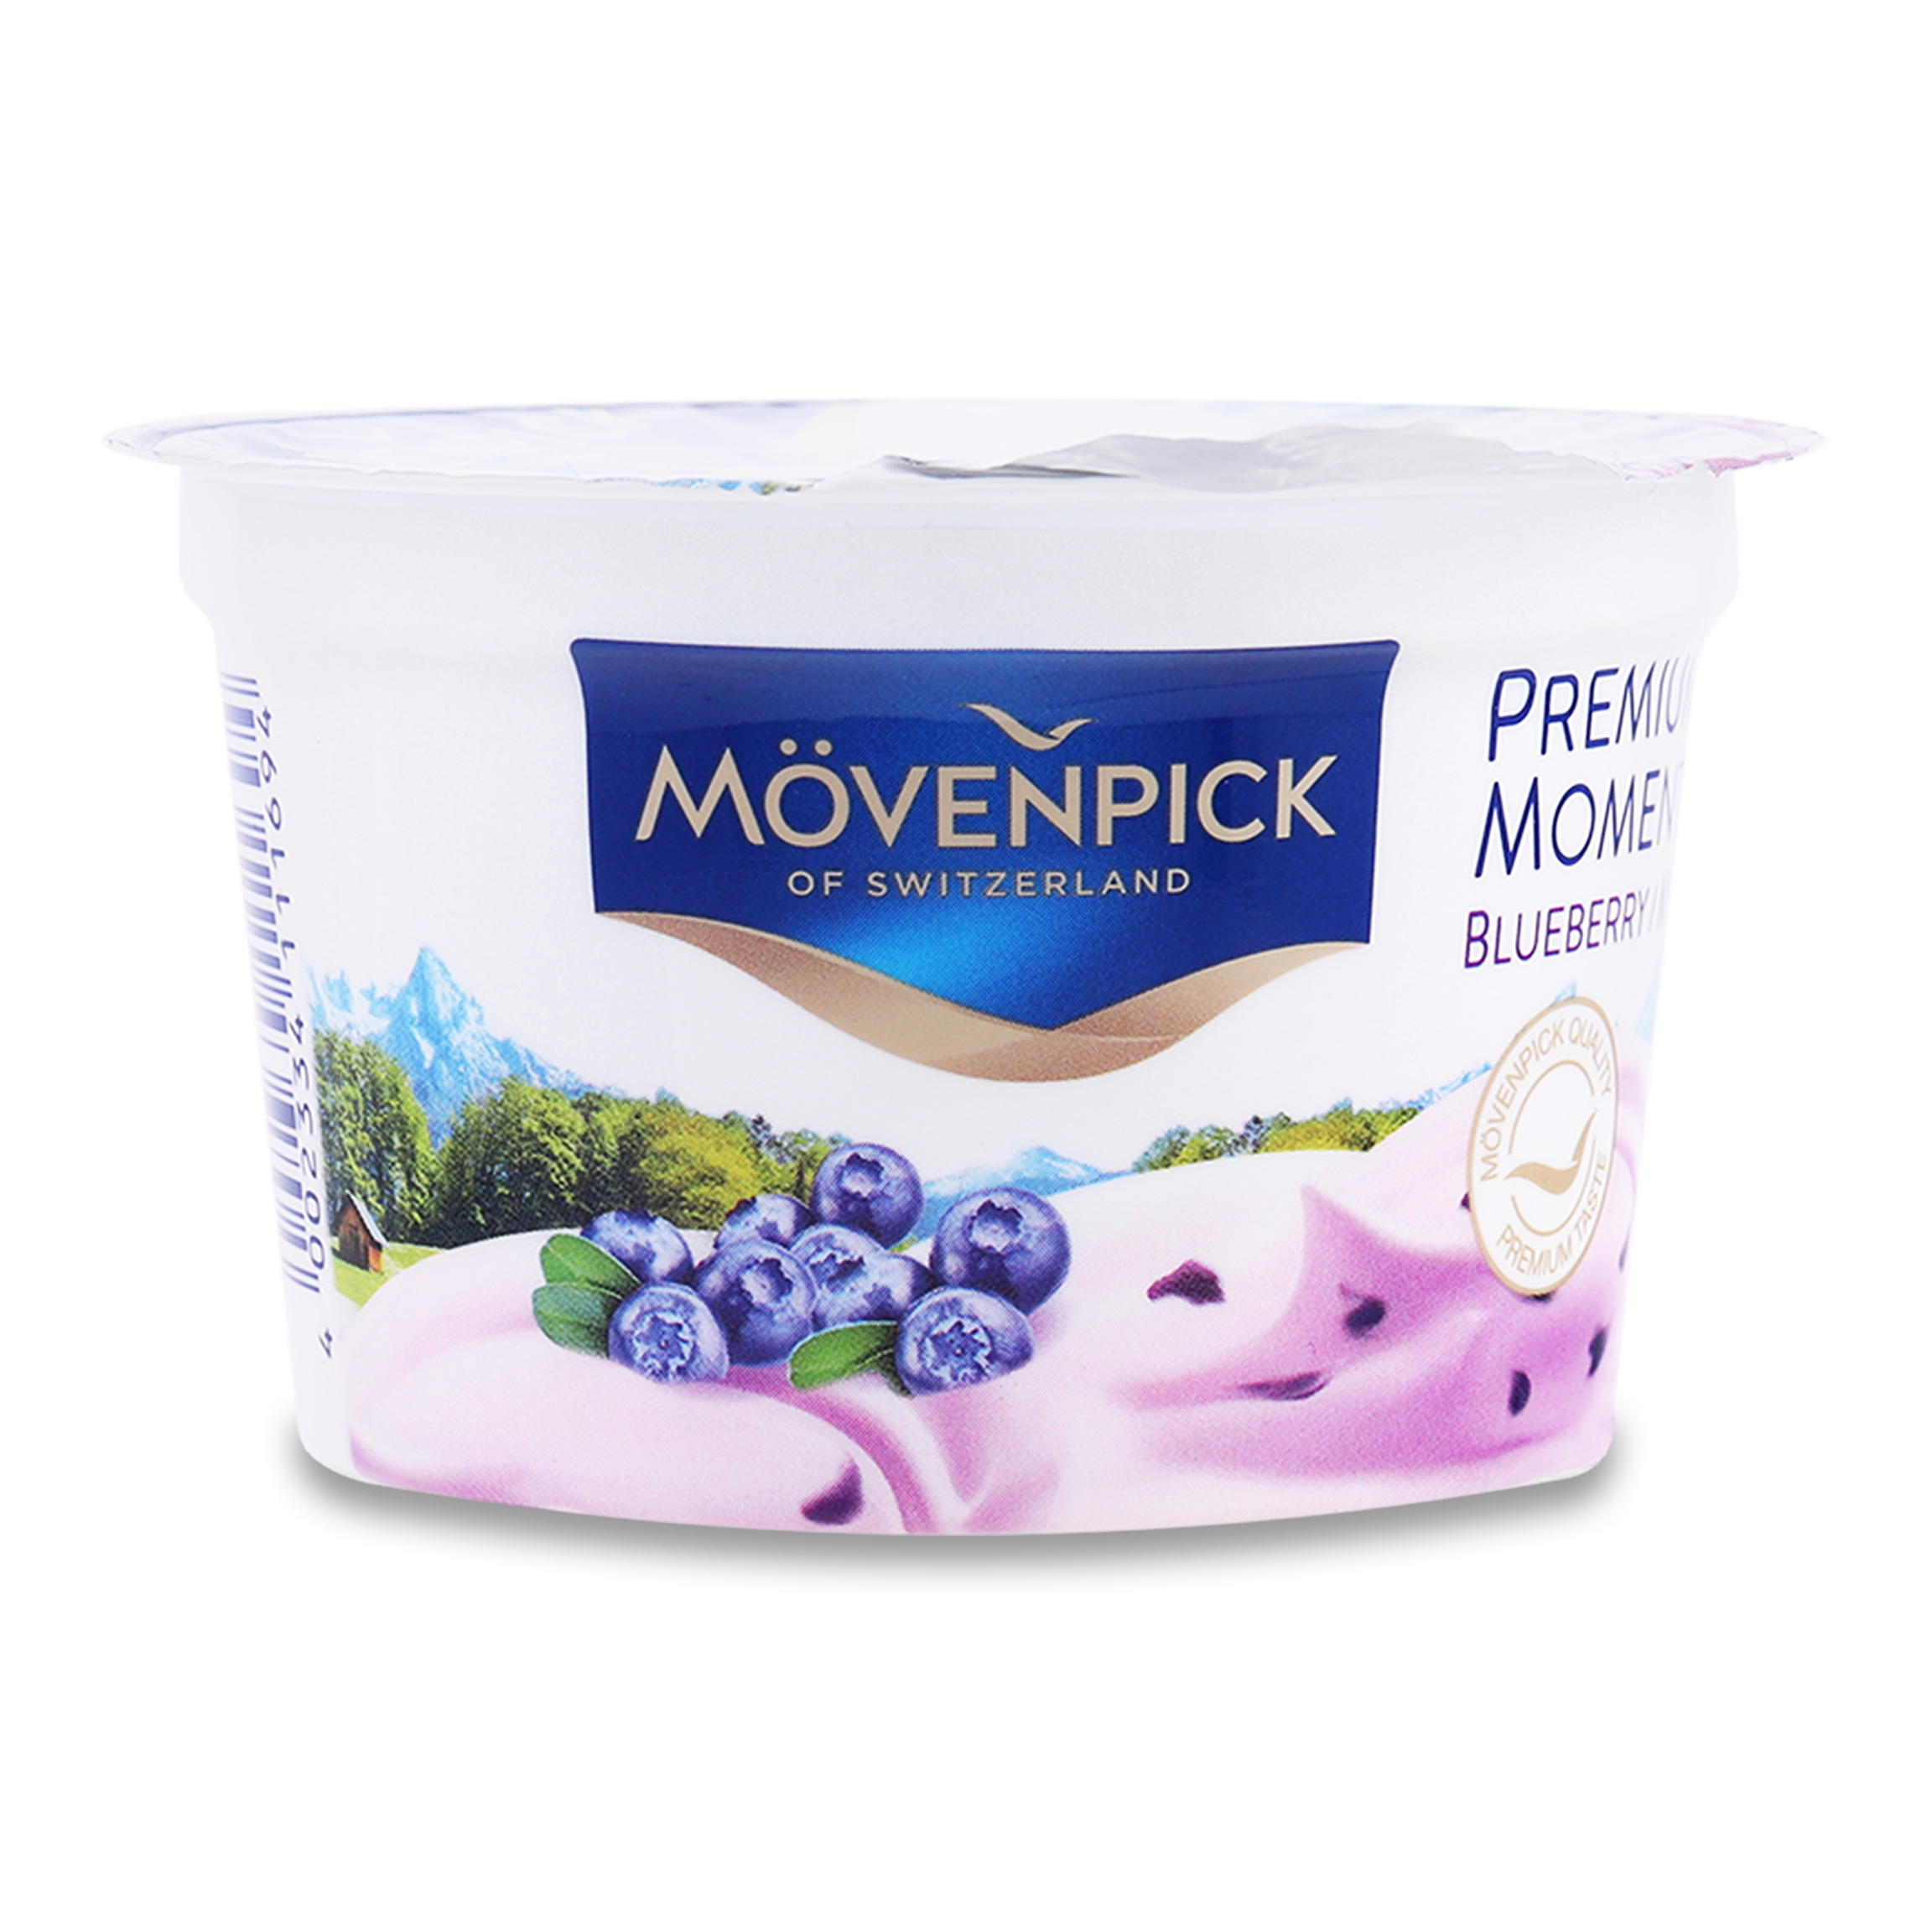 Йогурт Mövenpick Premium Moments Черника 5% 100г 2